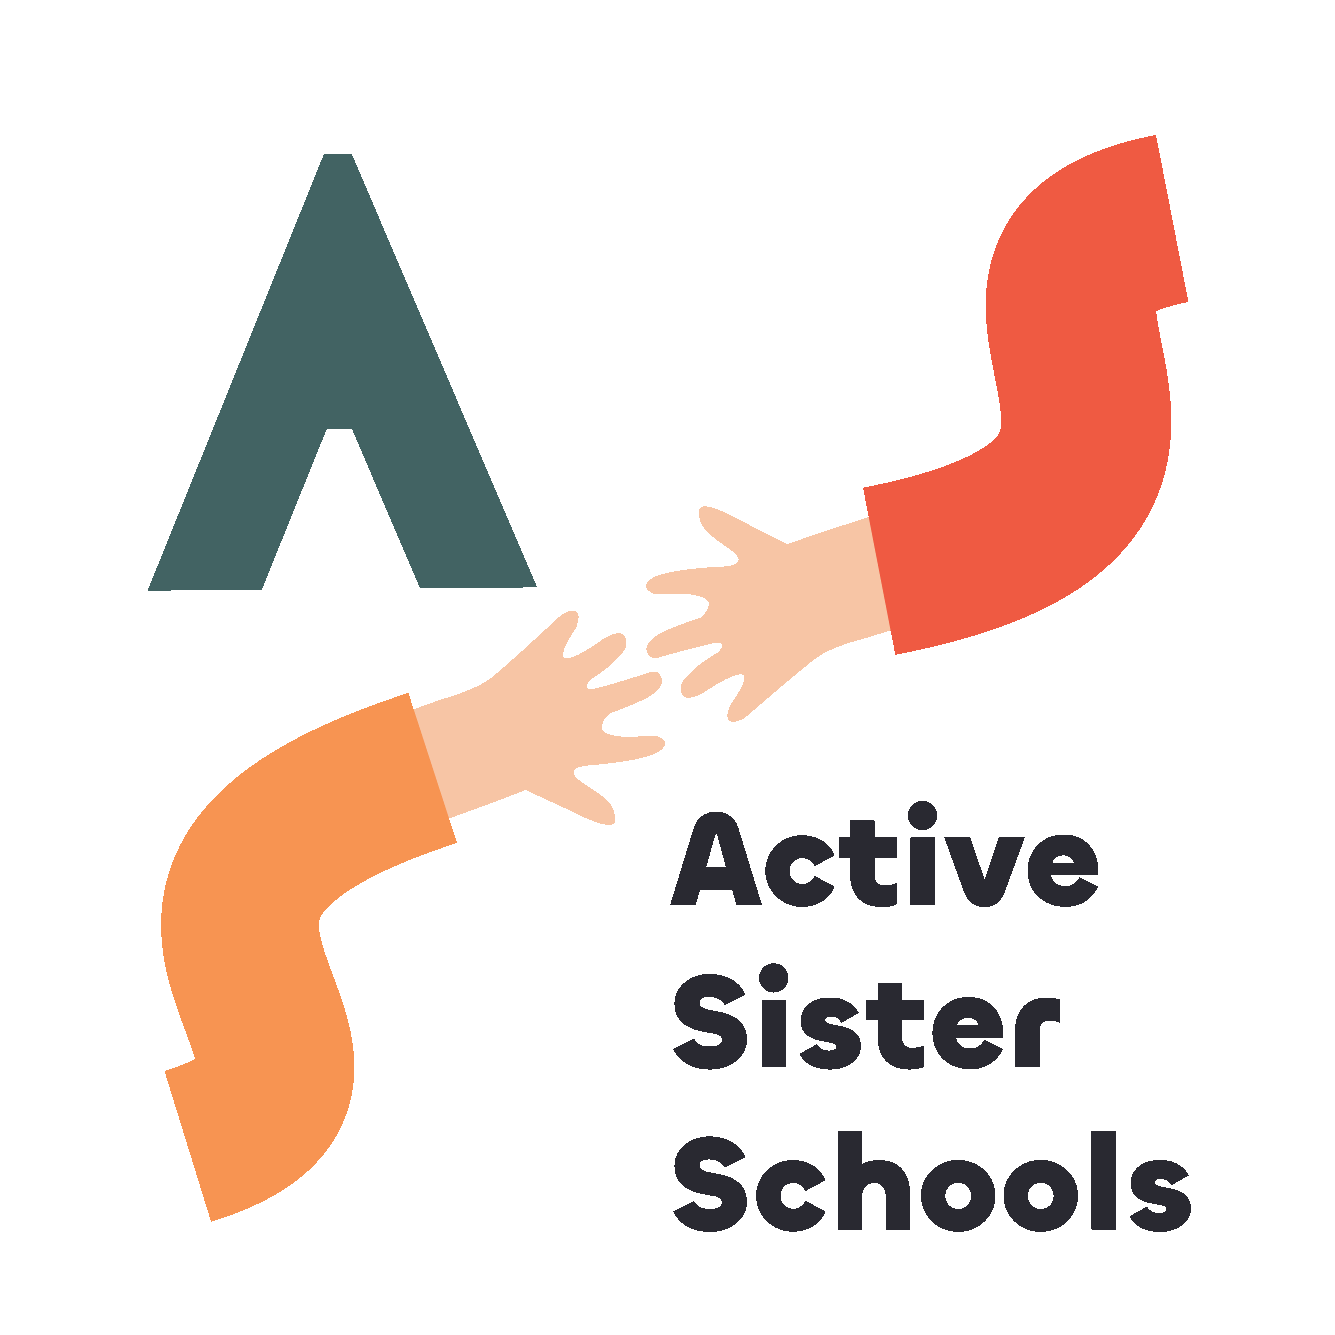 ACTIVE SISTER SCHOOLS logo